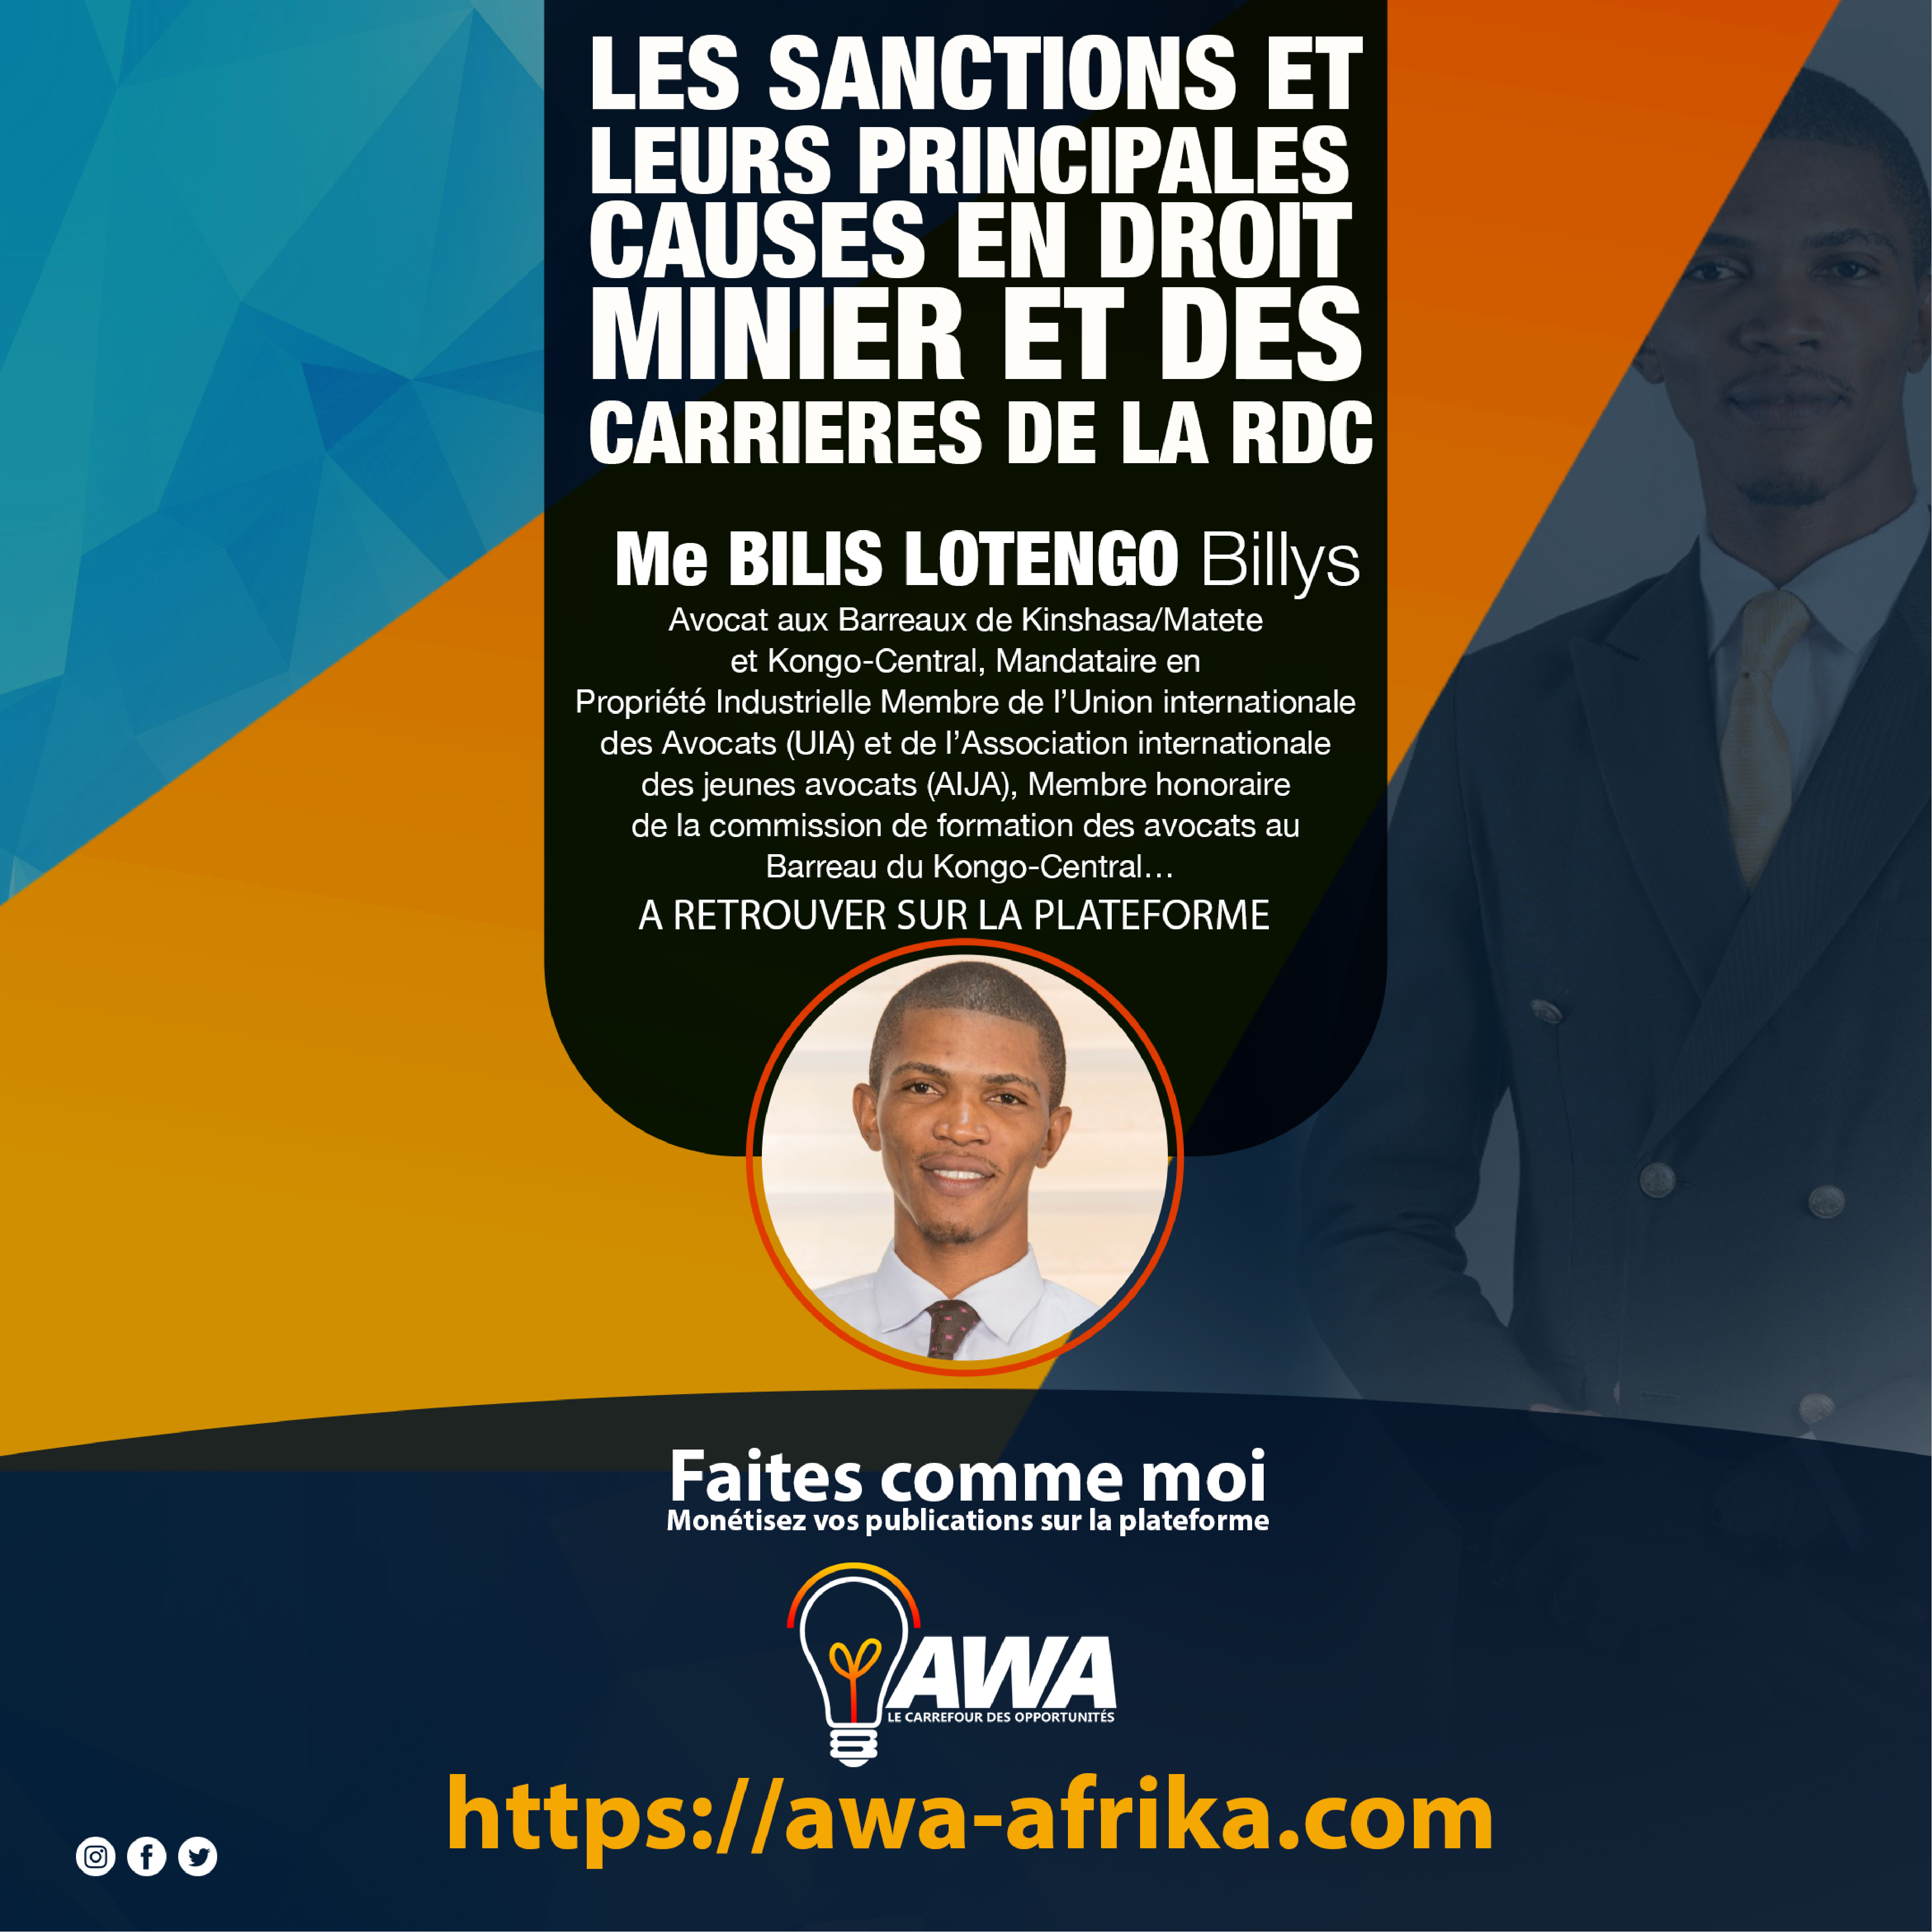 LES SANCTIONS ET LEURS PRINCIPALES CAUSES EN DROIT MINIER ET DES CARRIERES DE LA RDC